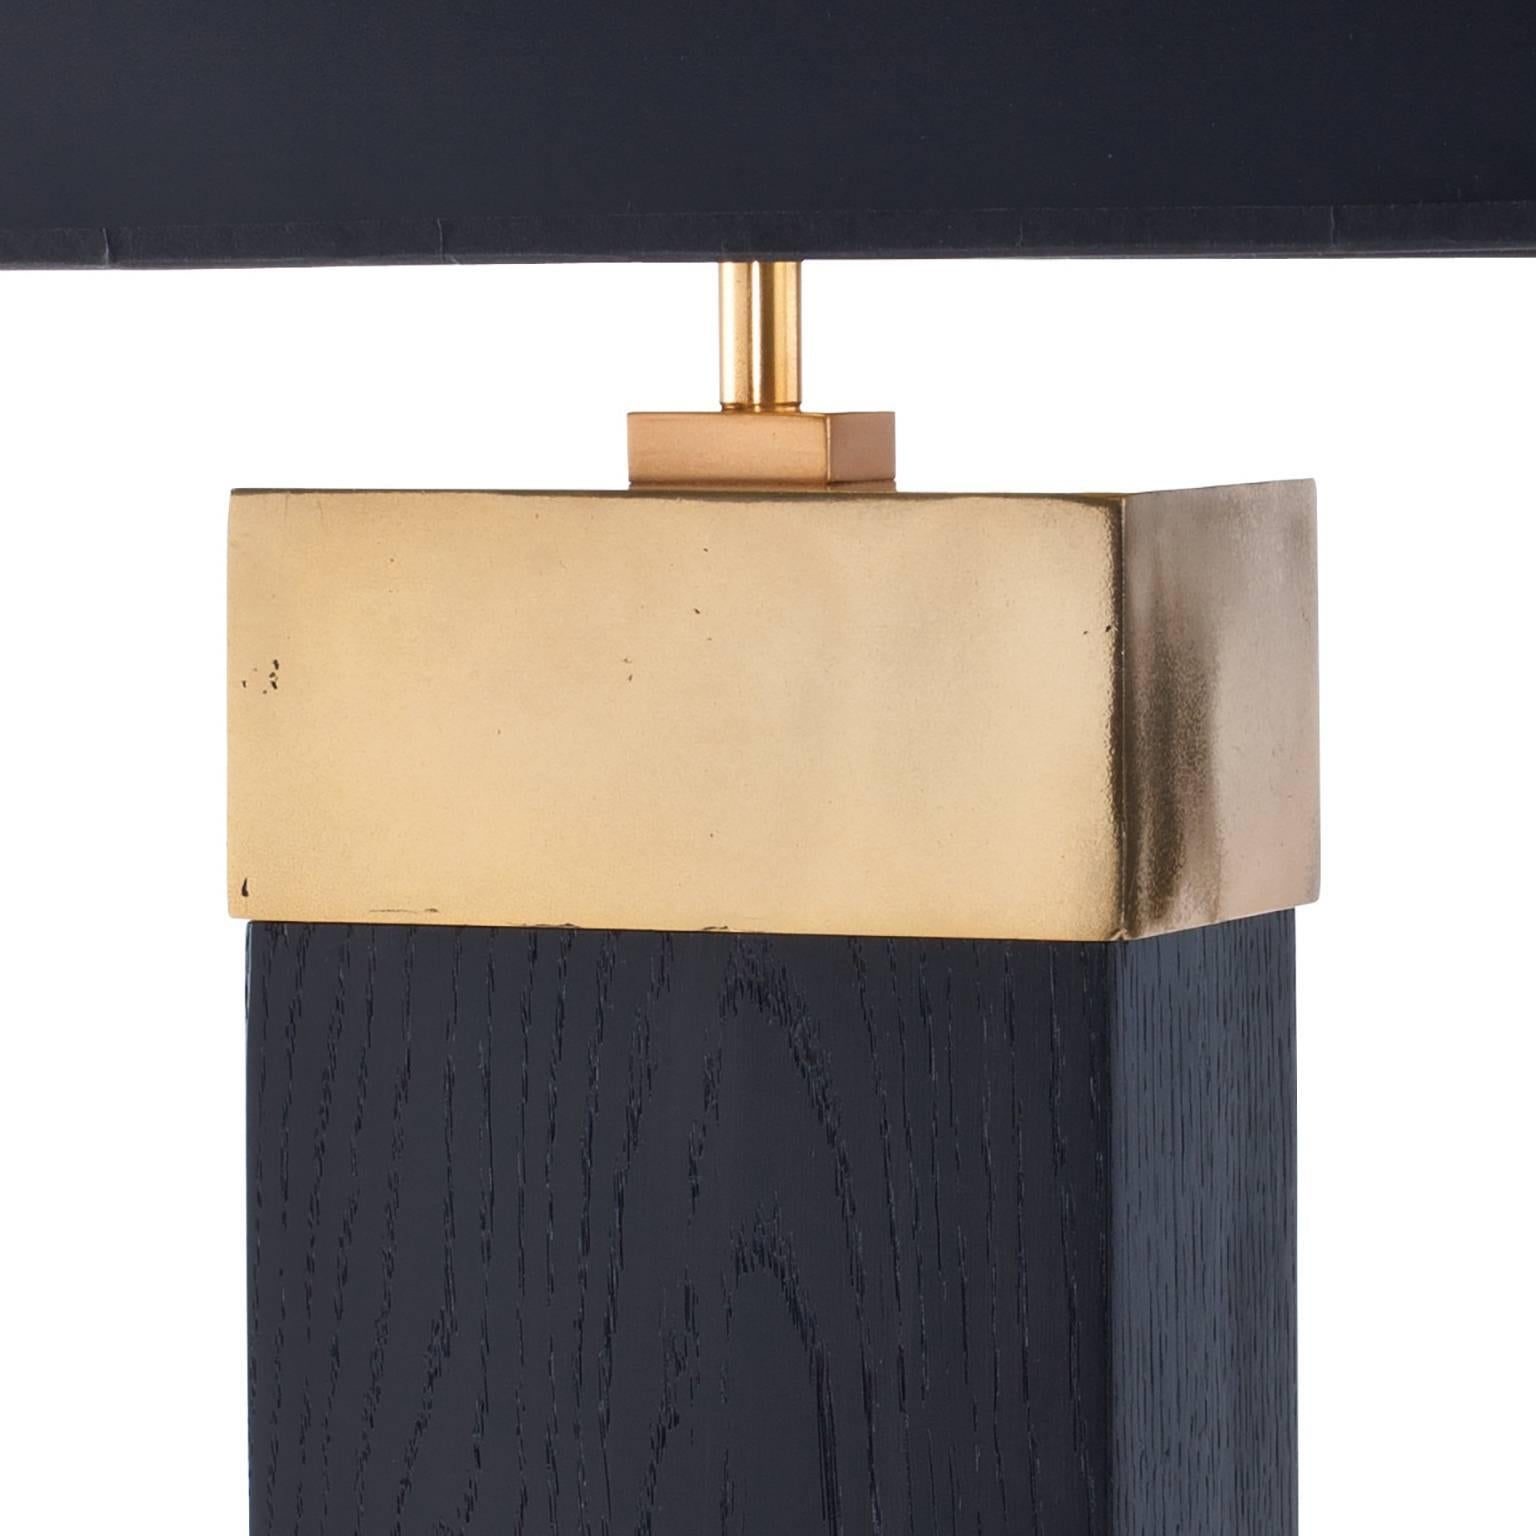 La lampe de table Tribeca est présentée ici dans une finition en chêne massif ébénisé avec un plateau et une section inférieure en bronze moulé finis en patine dorée. Il s'agit d'un élégant design contemporain qui est à la fois audacieux en termes